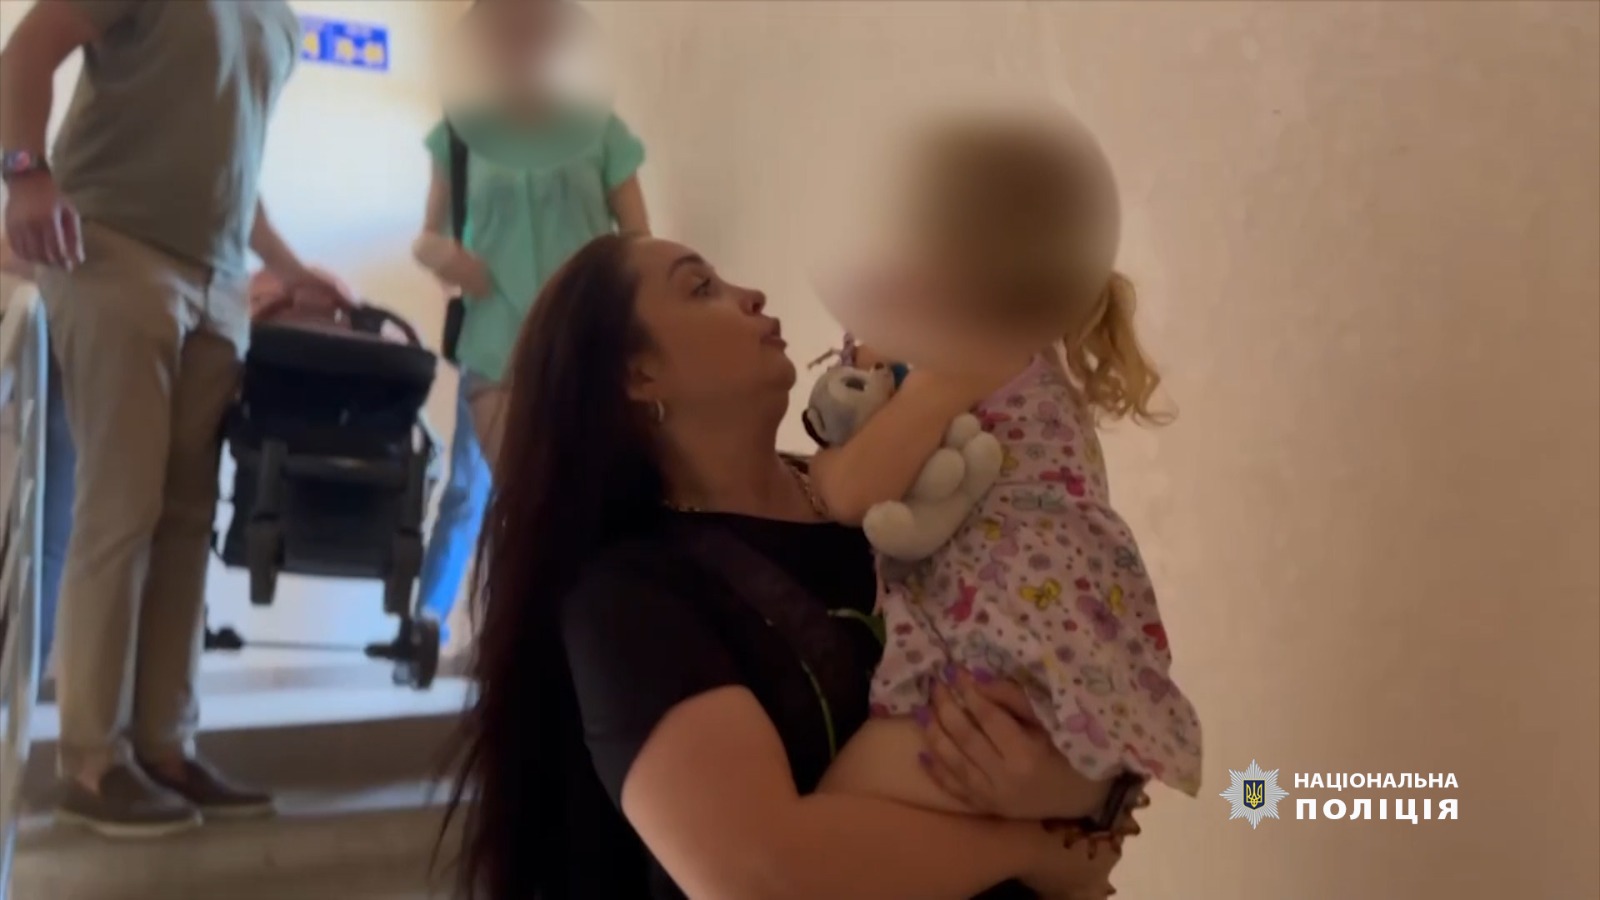 Мужчине, который в Черноморске содержал женщину с ребенком в квартире, грозит до пяти лет заключения